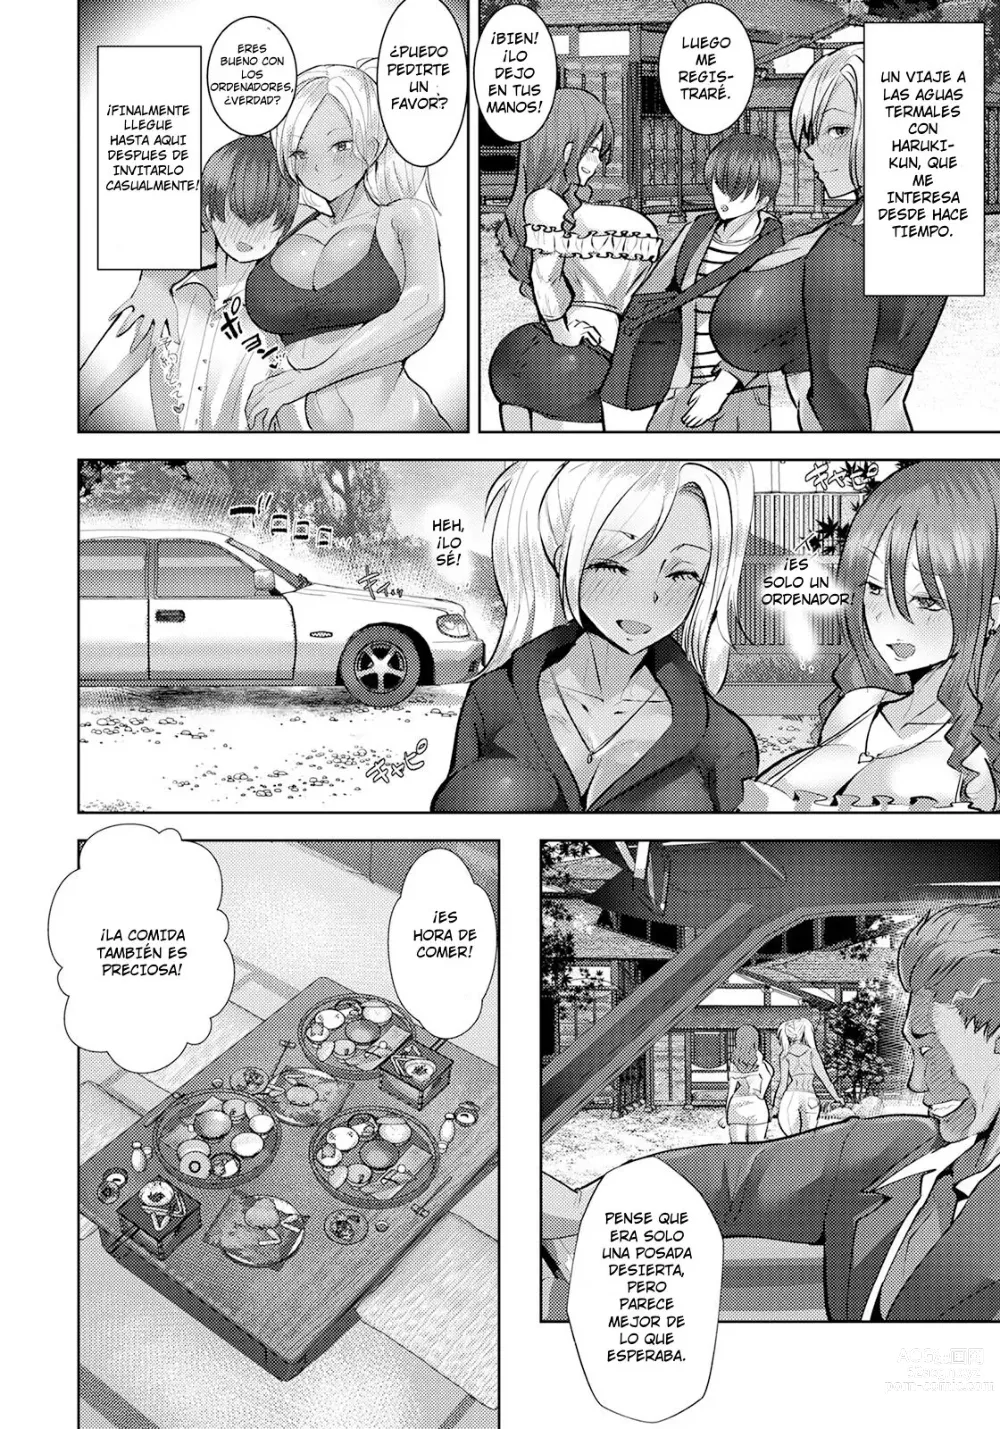 Page 2 of manga Negaeri Onsen